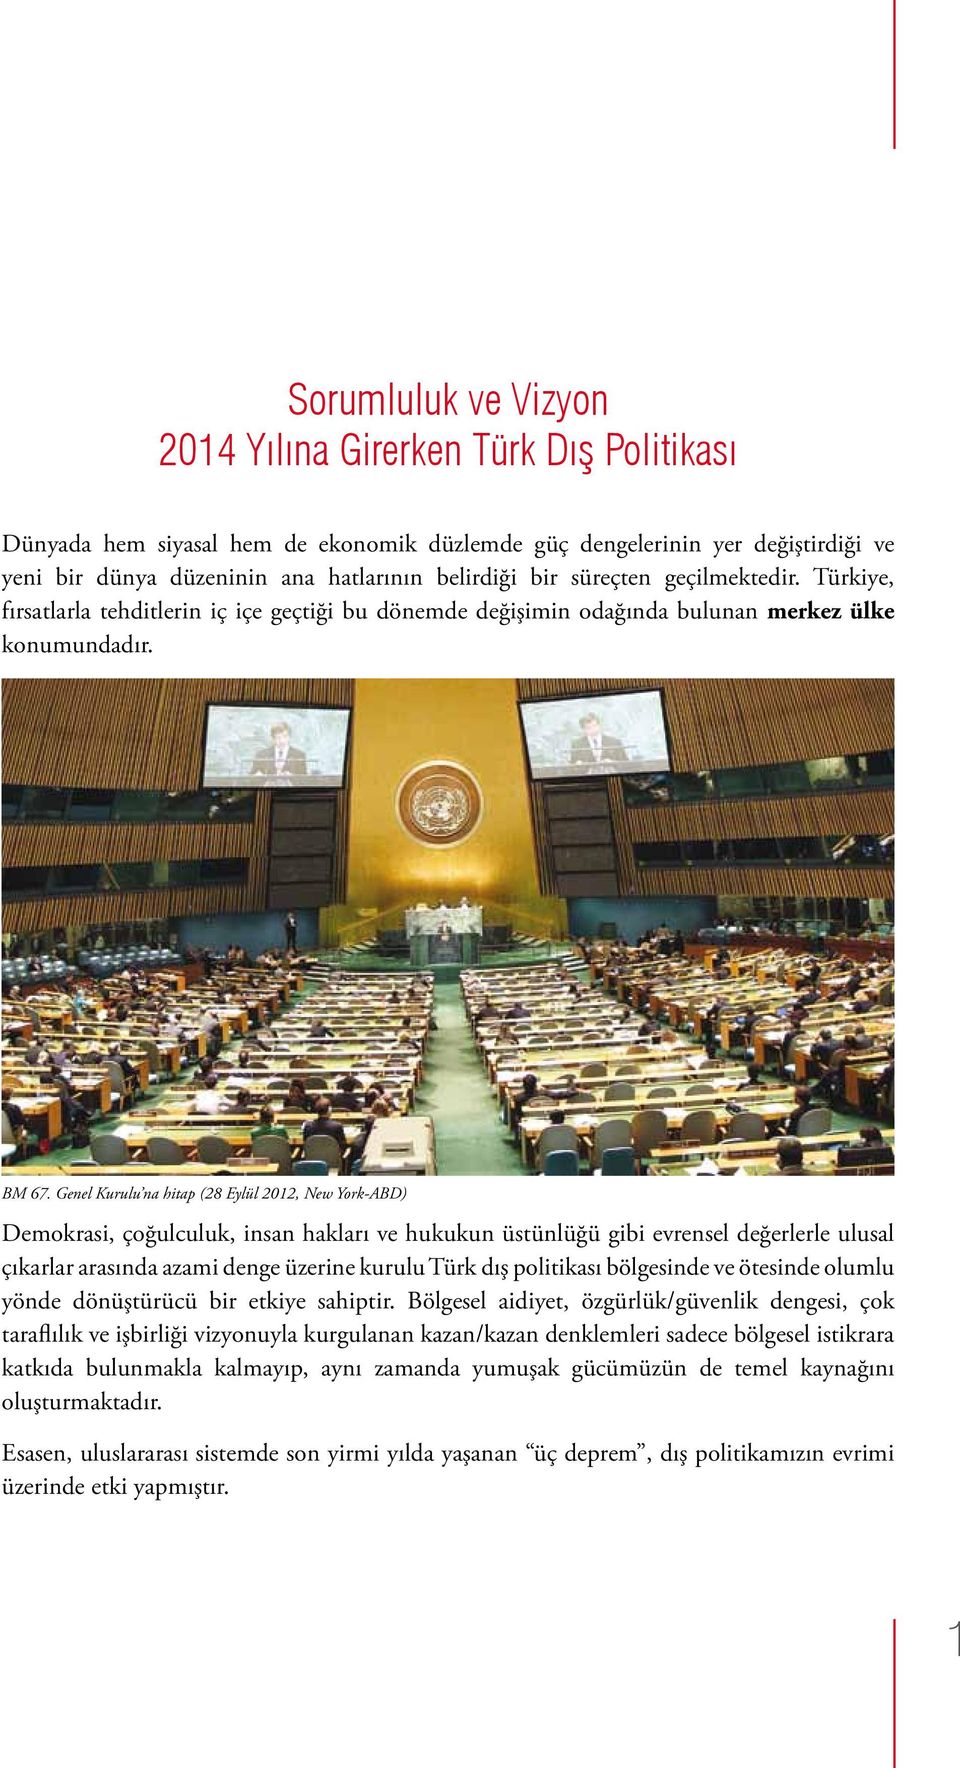 Genel Kurulu na hitap (28 Eylül 2012, New York-ABD) Demokrasi, çoğulculuk, insan hakları ve hukukun üstünlüğü gibi evrensel değerlerle ulusal çıkarlar arasında azami denge üzerine kurulu Türk dış